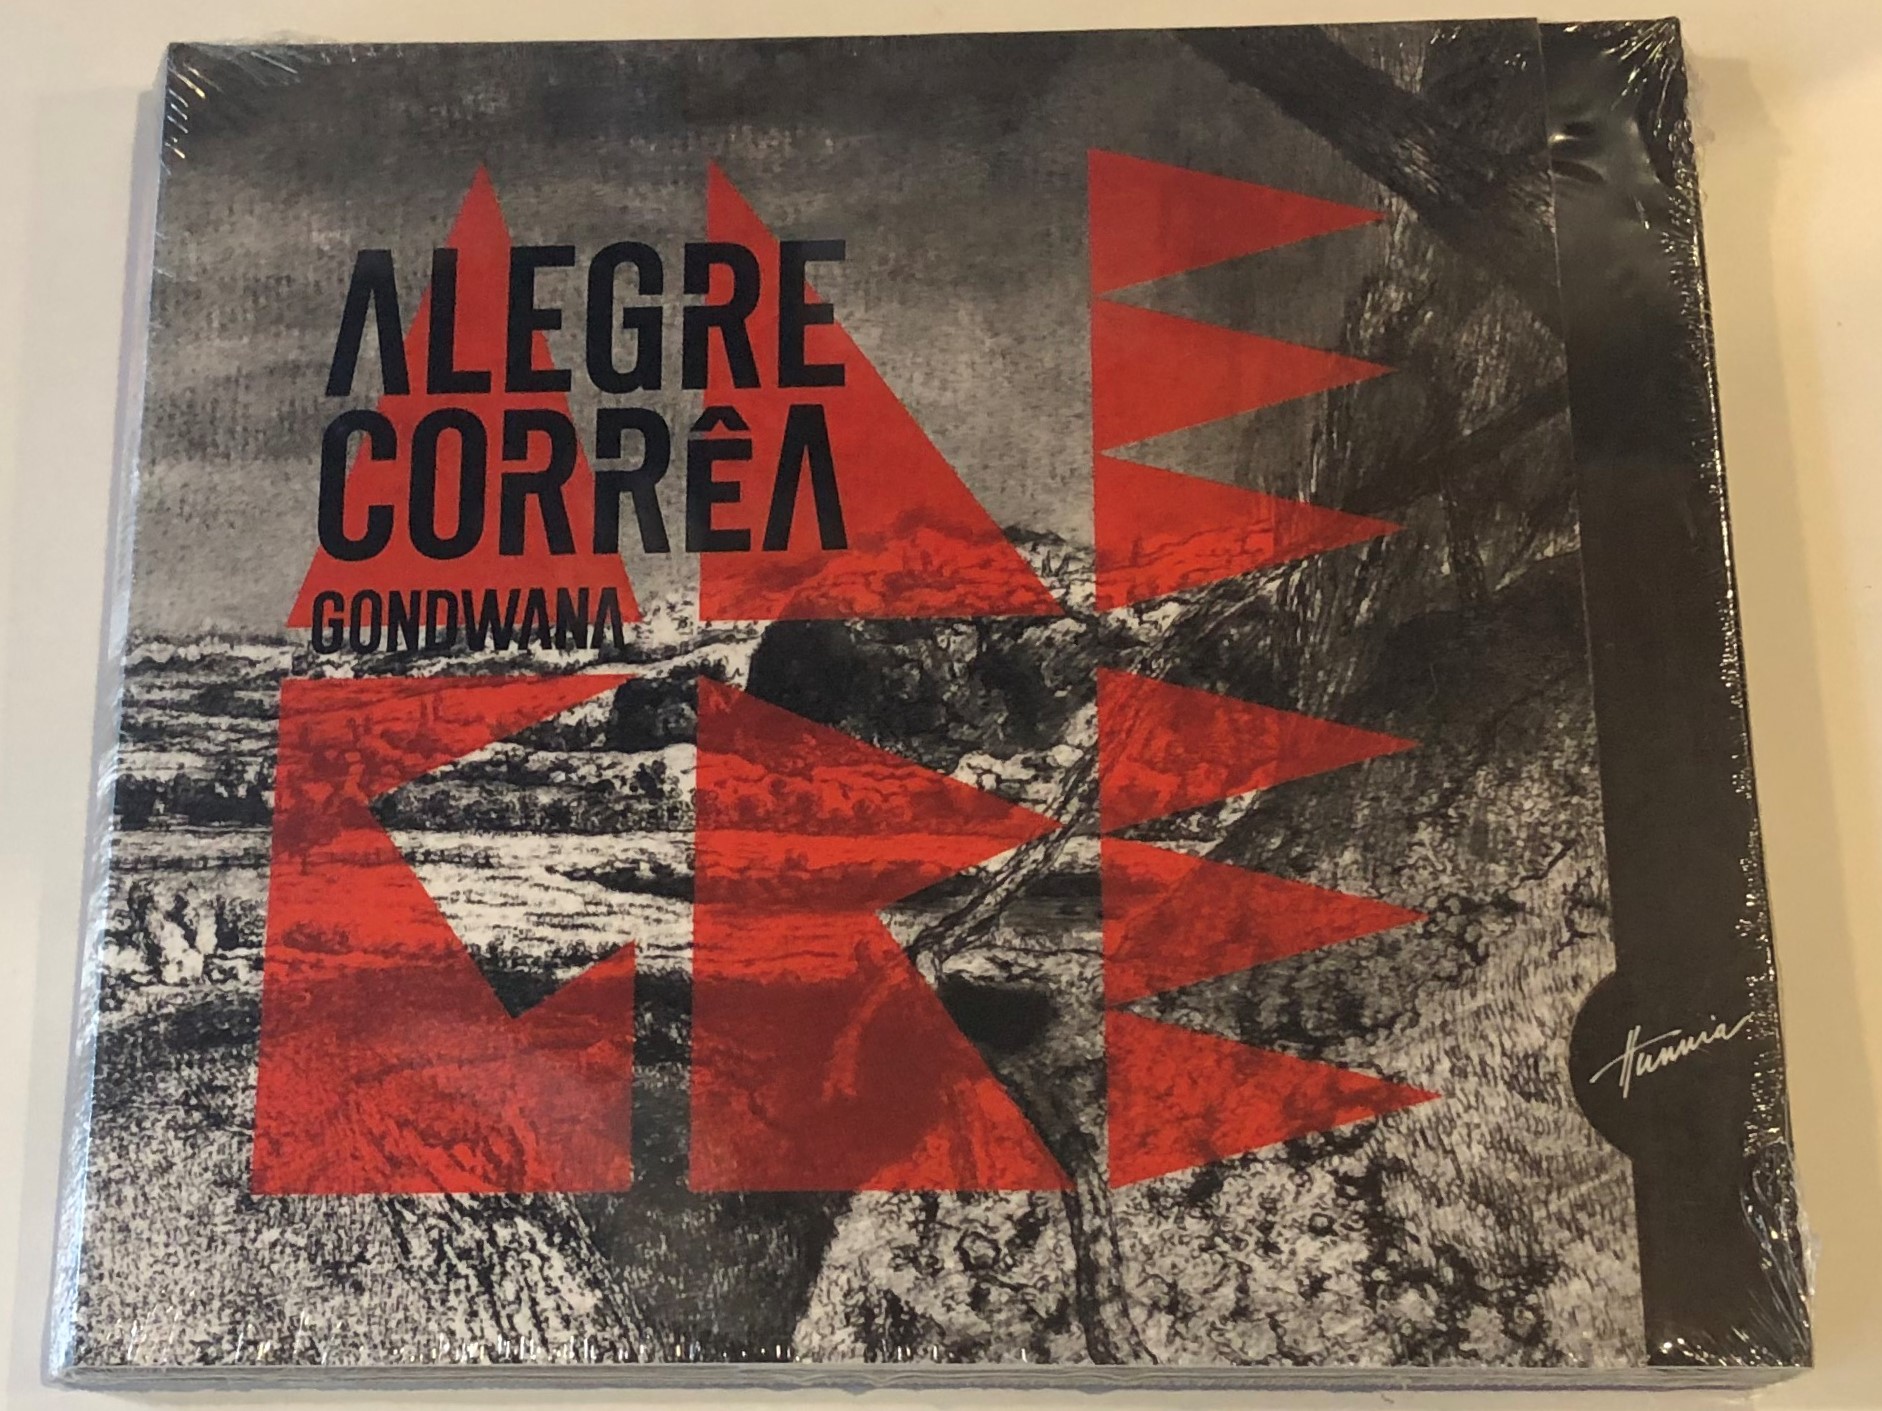 alegre-correa-gondwana-hunnia-records-film-production-audio-cd-2015-5999883043318-1-.jpg